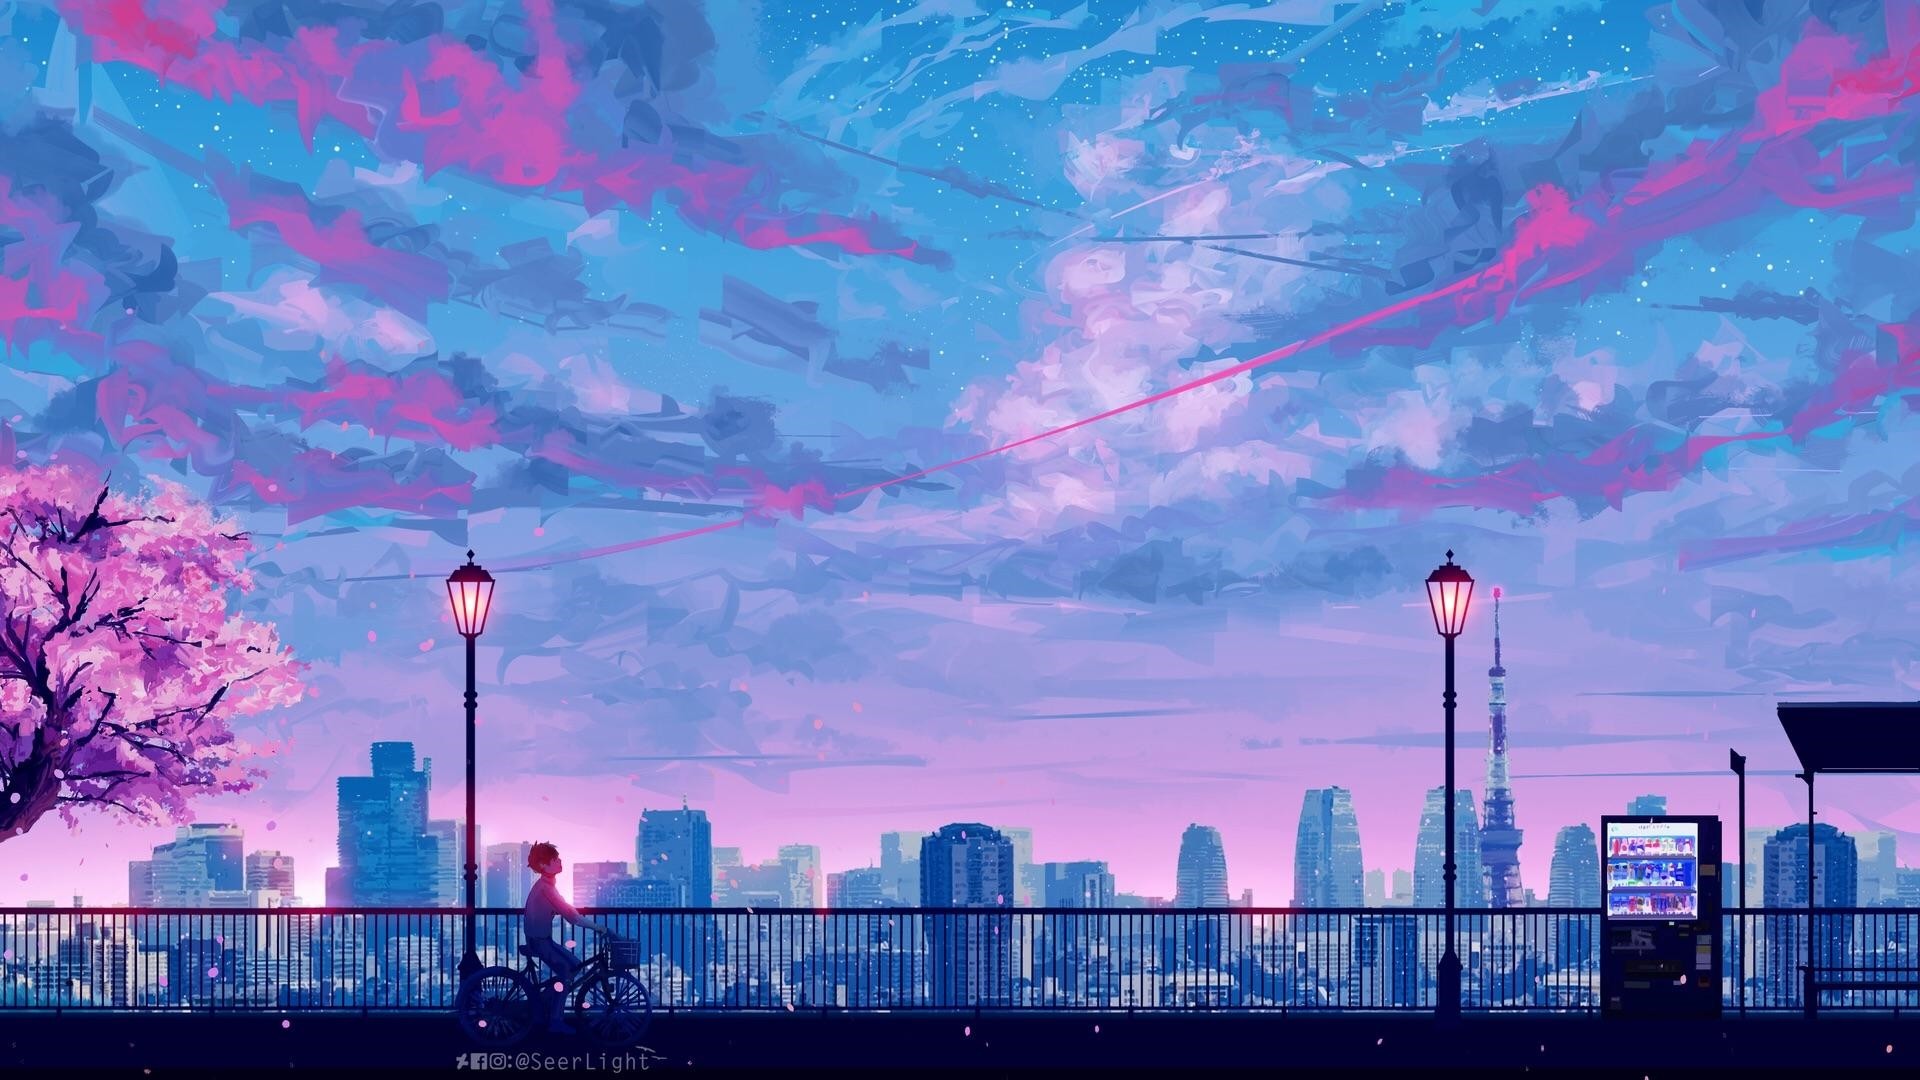 Aesthetic Anime Background Wallpaper